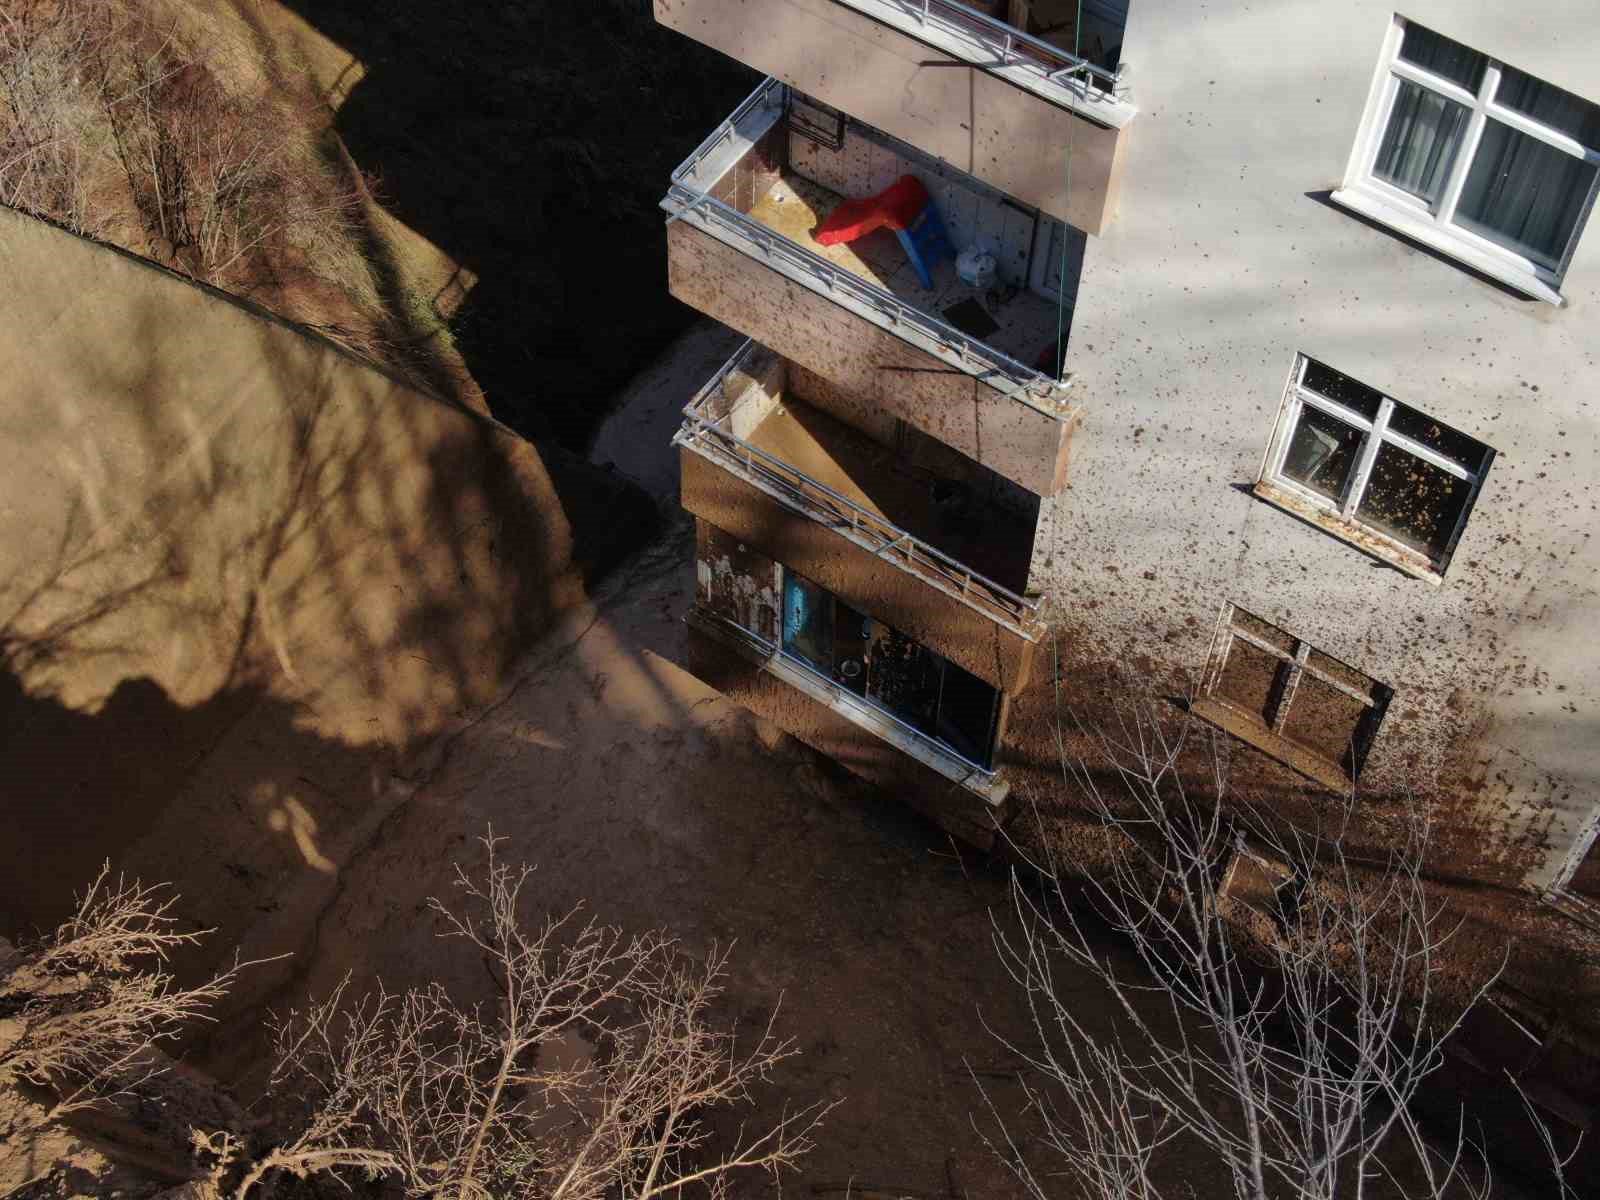 artvinde yamactan kopan topraklar evlerin icerisine doldu 10 bina zarar gordu 1